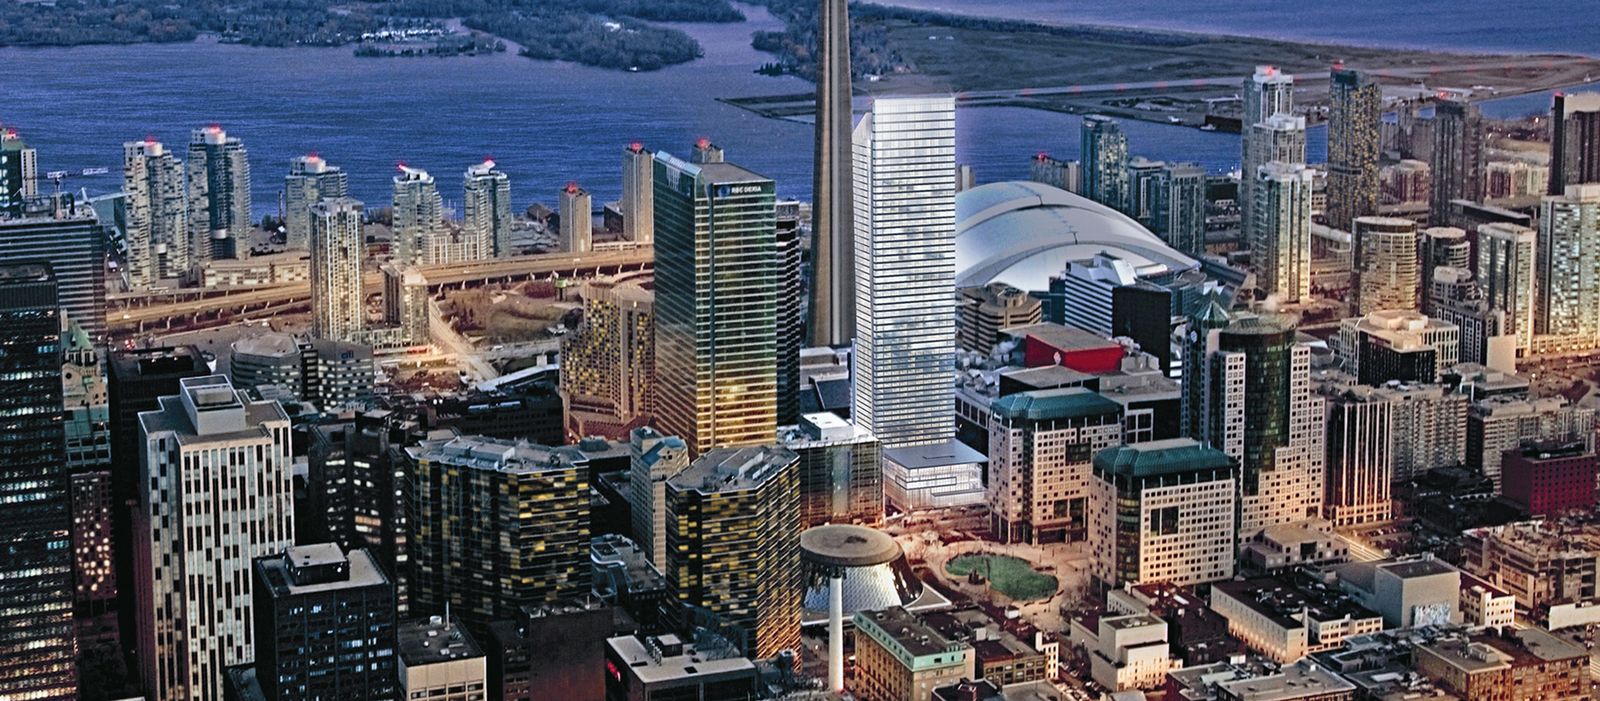 Impression Ritz Carlton Toronto